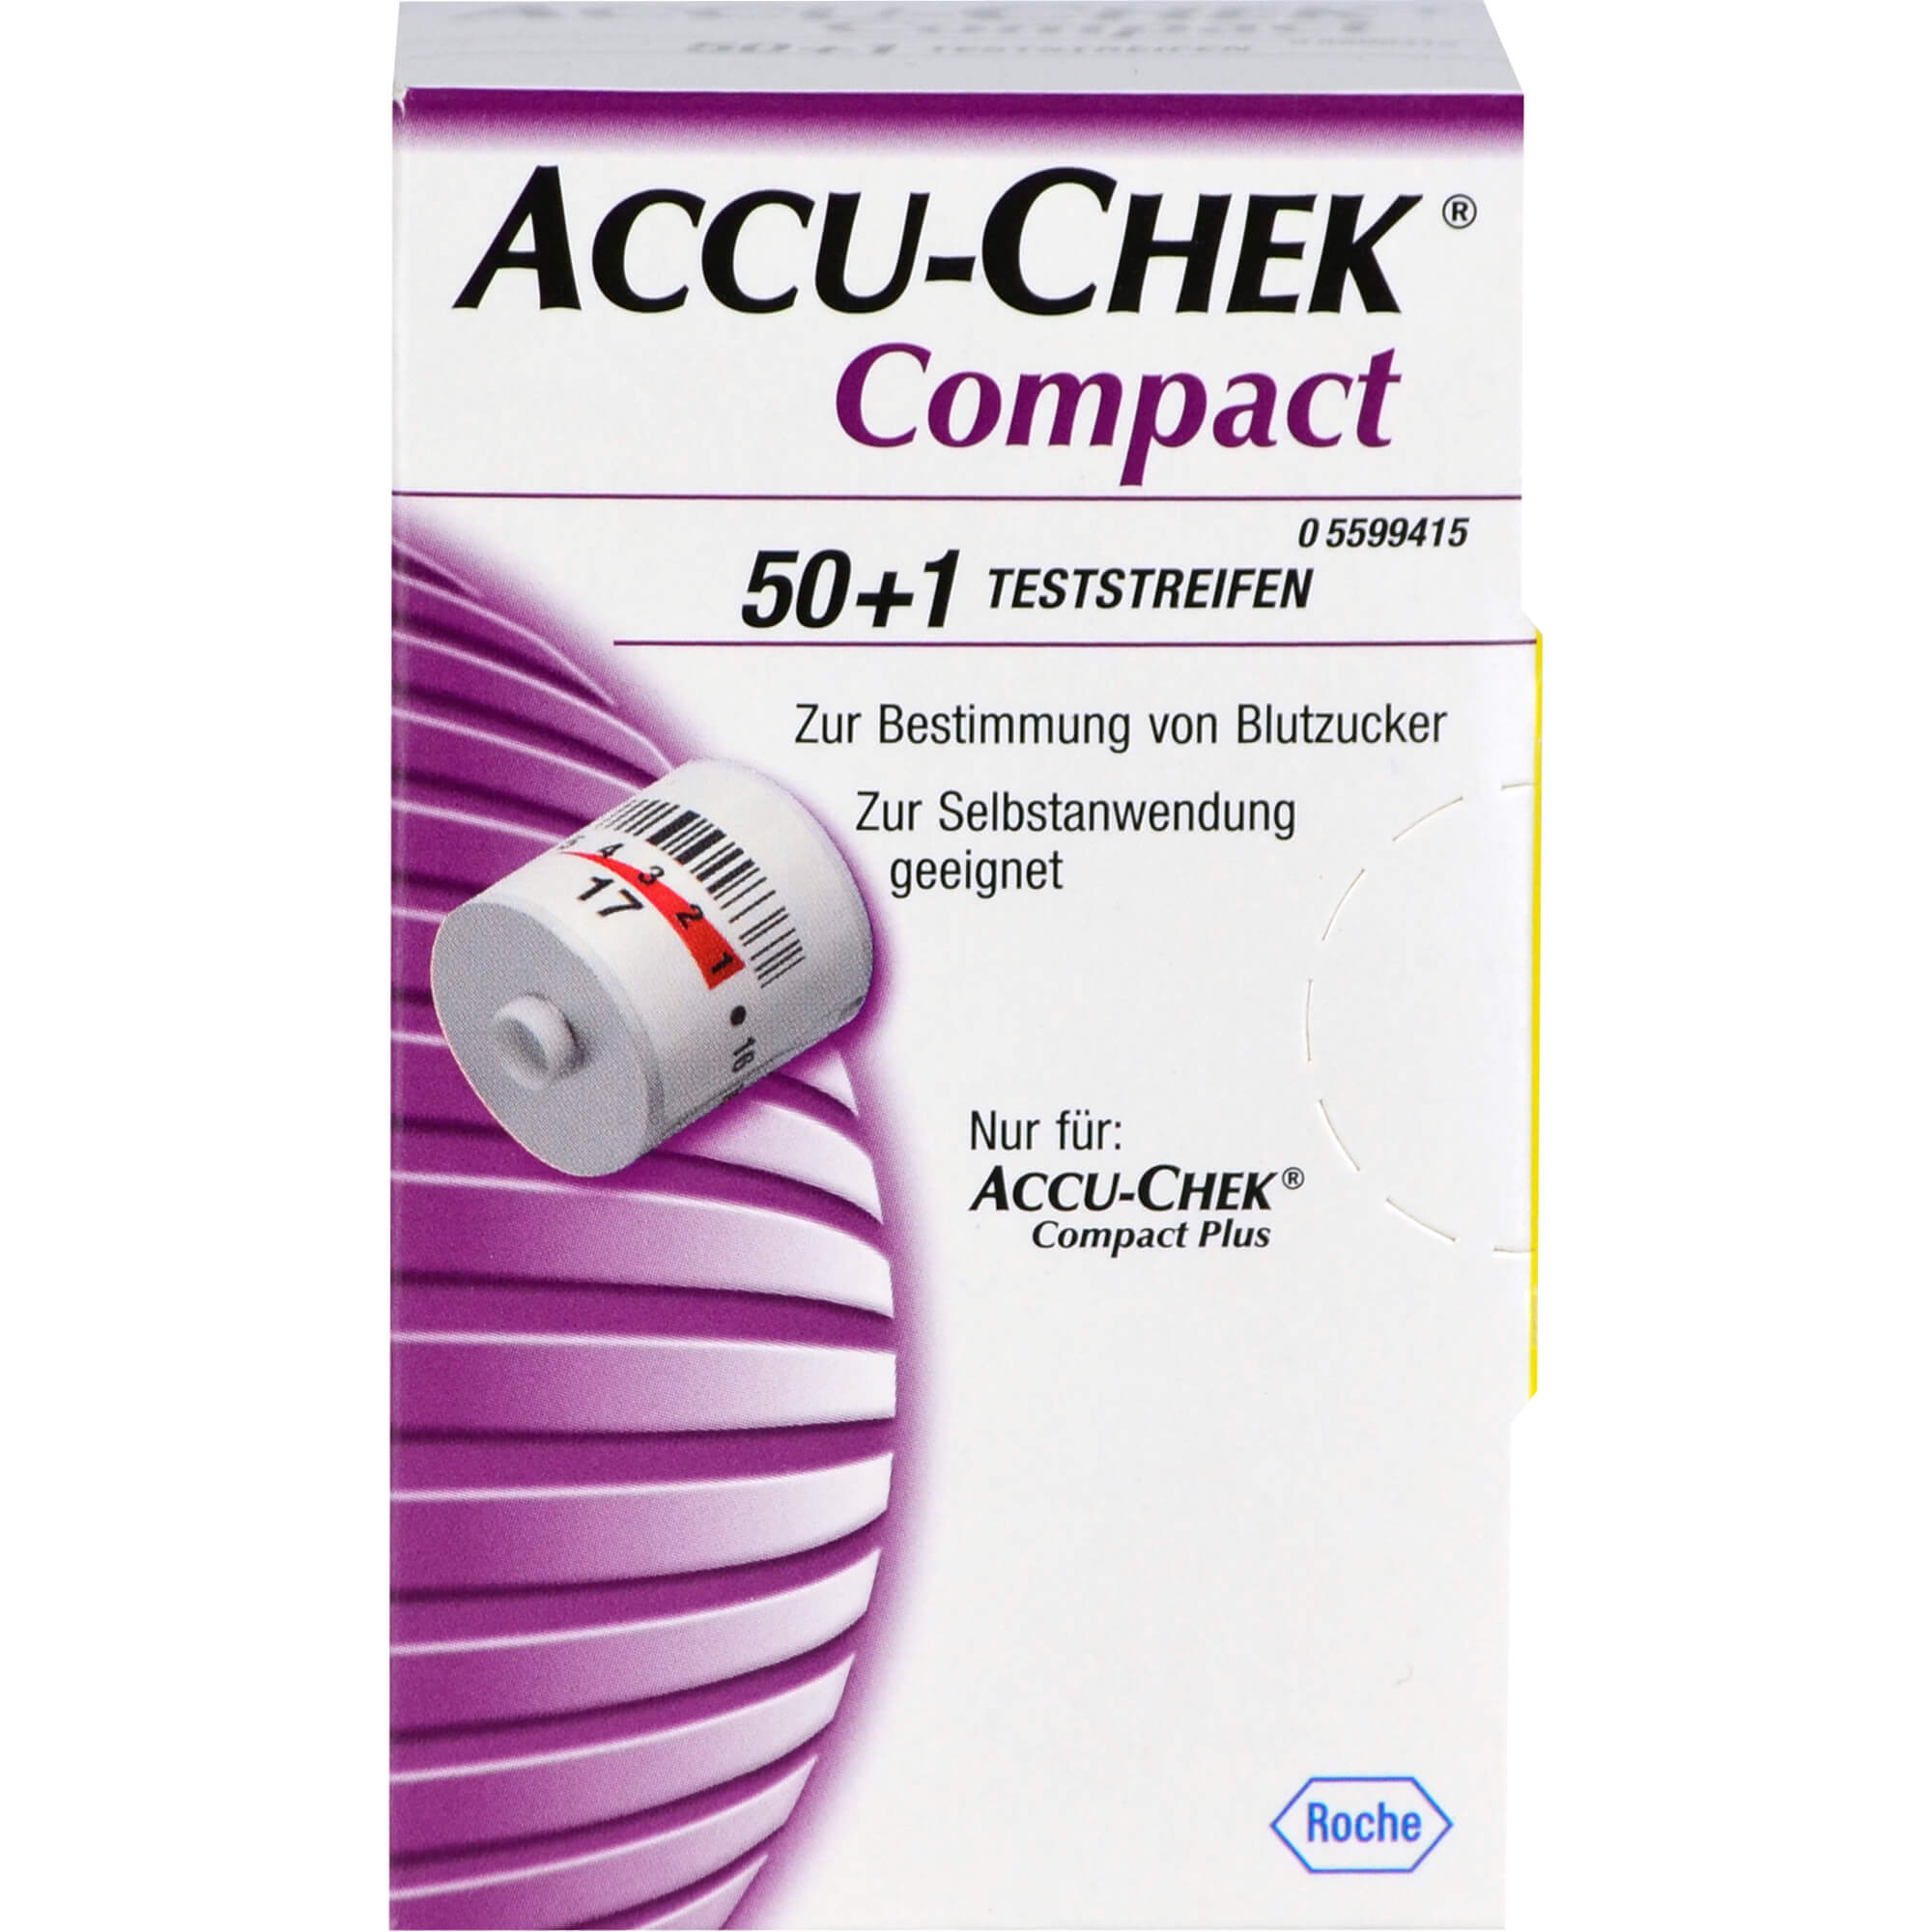 ACCU-CHEK Compact Teststreifen